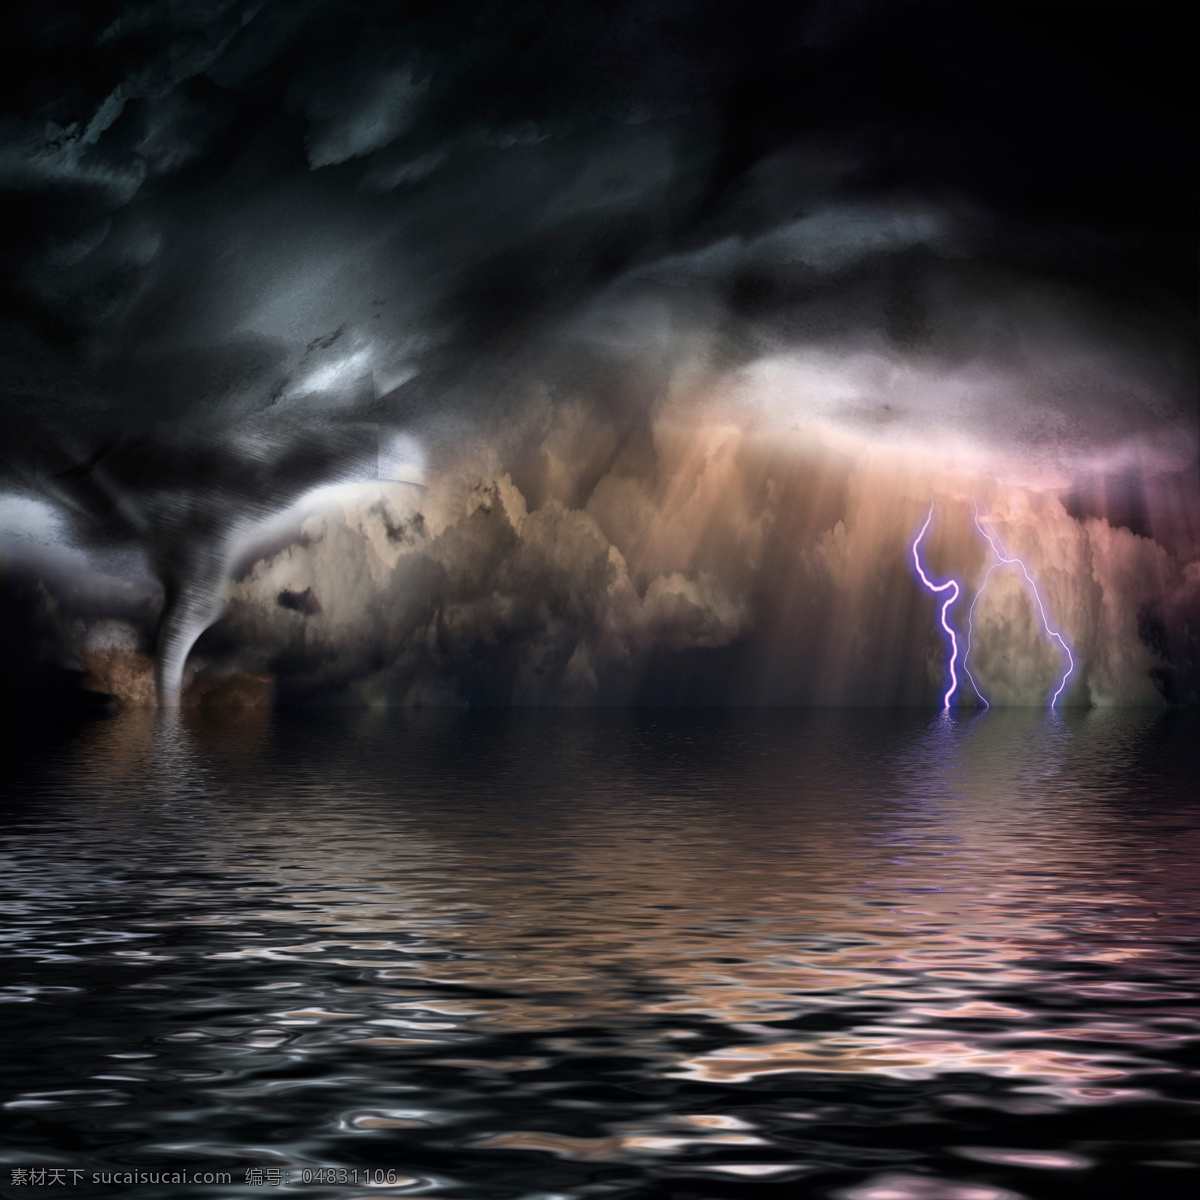 海面 上 龙卷风 闪电 雷电 飓风 暴风 自然灾害 乌云 山水风景 风景图片